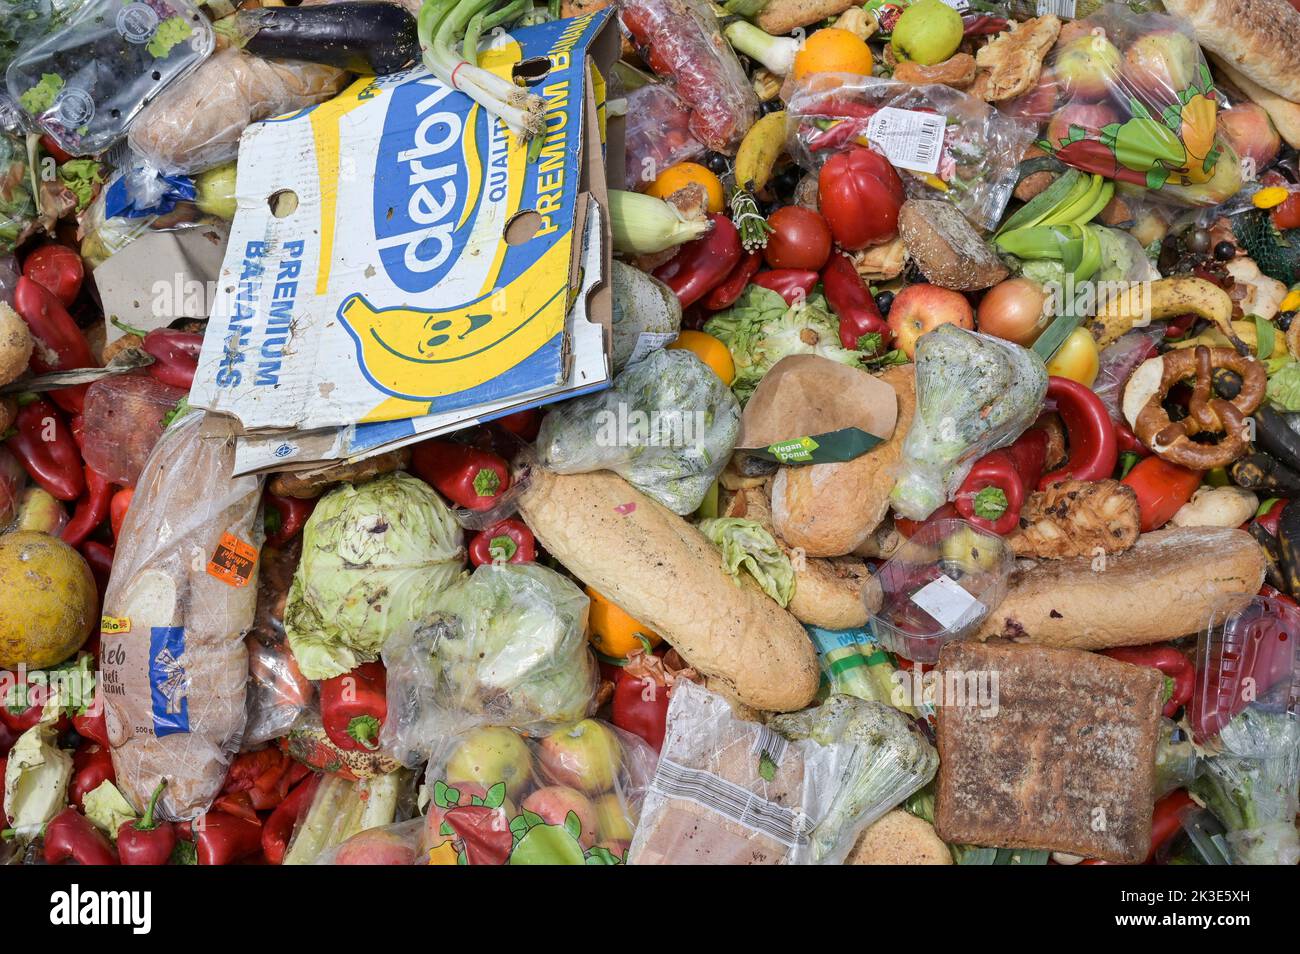 SERBIA, food waste from supermarket / SERBIEN, Lebensmittel Abfälle von Supermärkten Stock Photo